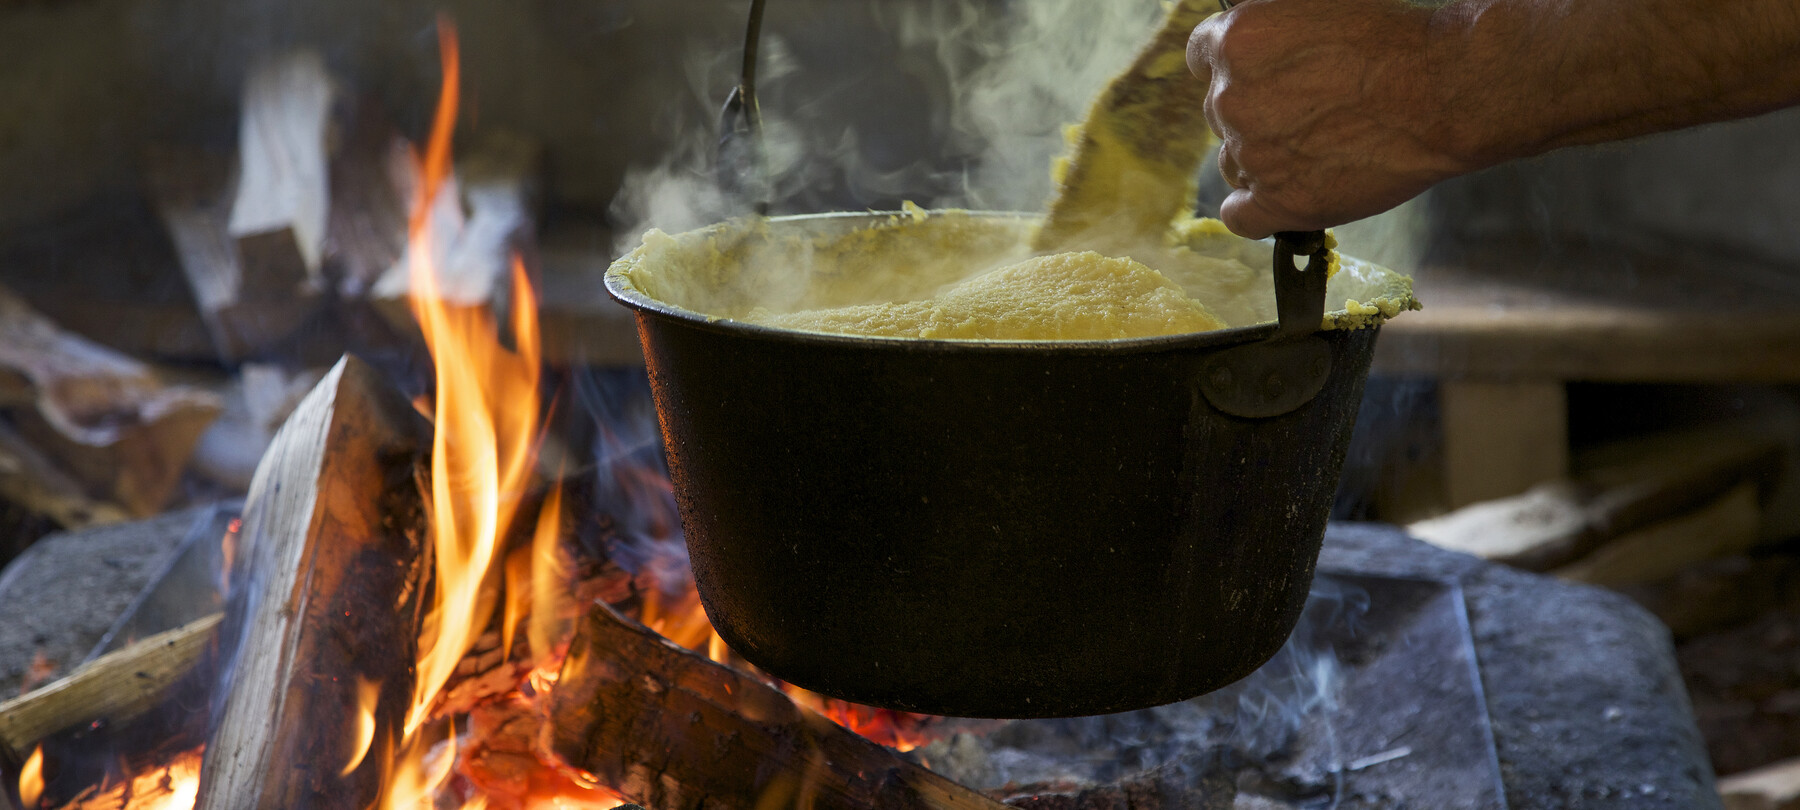 Żółta mąka ze Storo: złoto Trentino